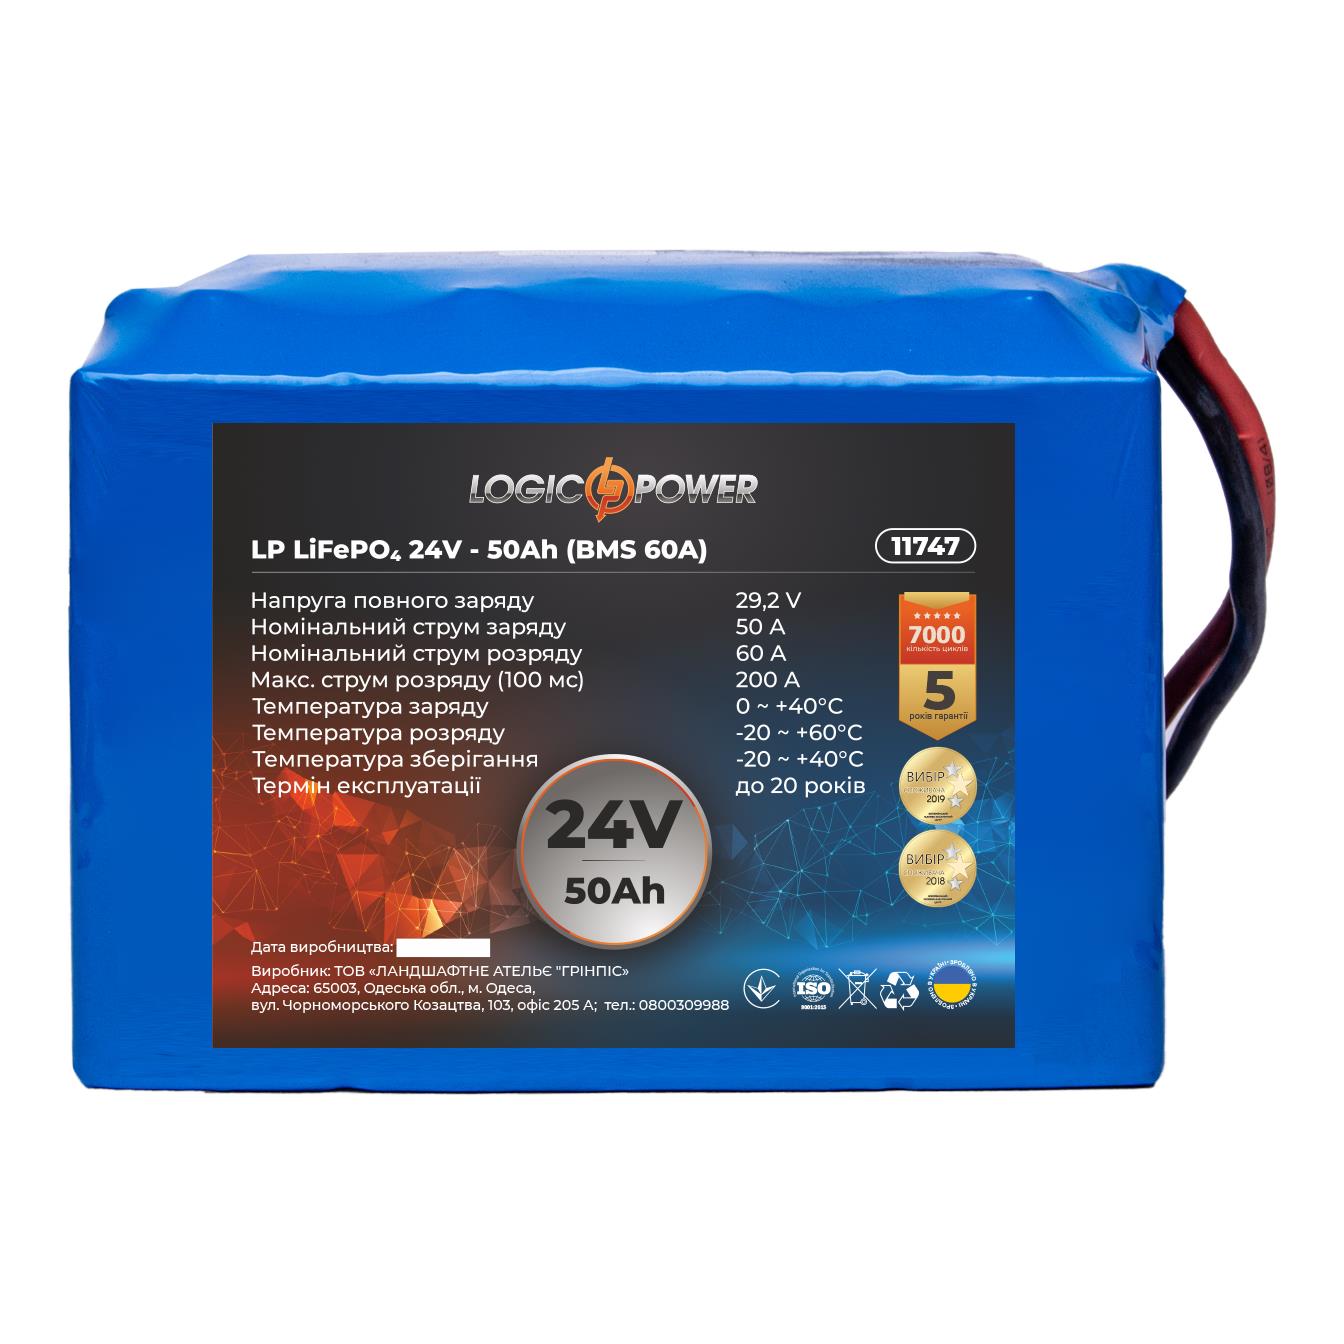 Аккумулятор литий-железо-фосфатный LogicPower LP LiFePO4 24V - 50 Ah (BMS 60A) (11747) в интернет-магазине, главное фото